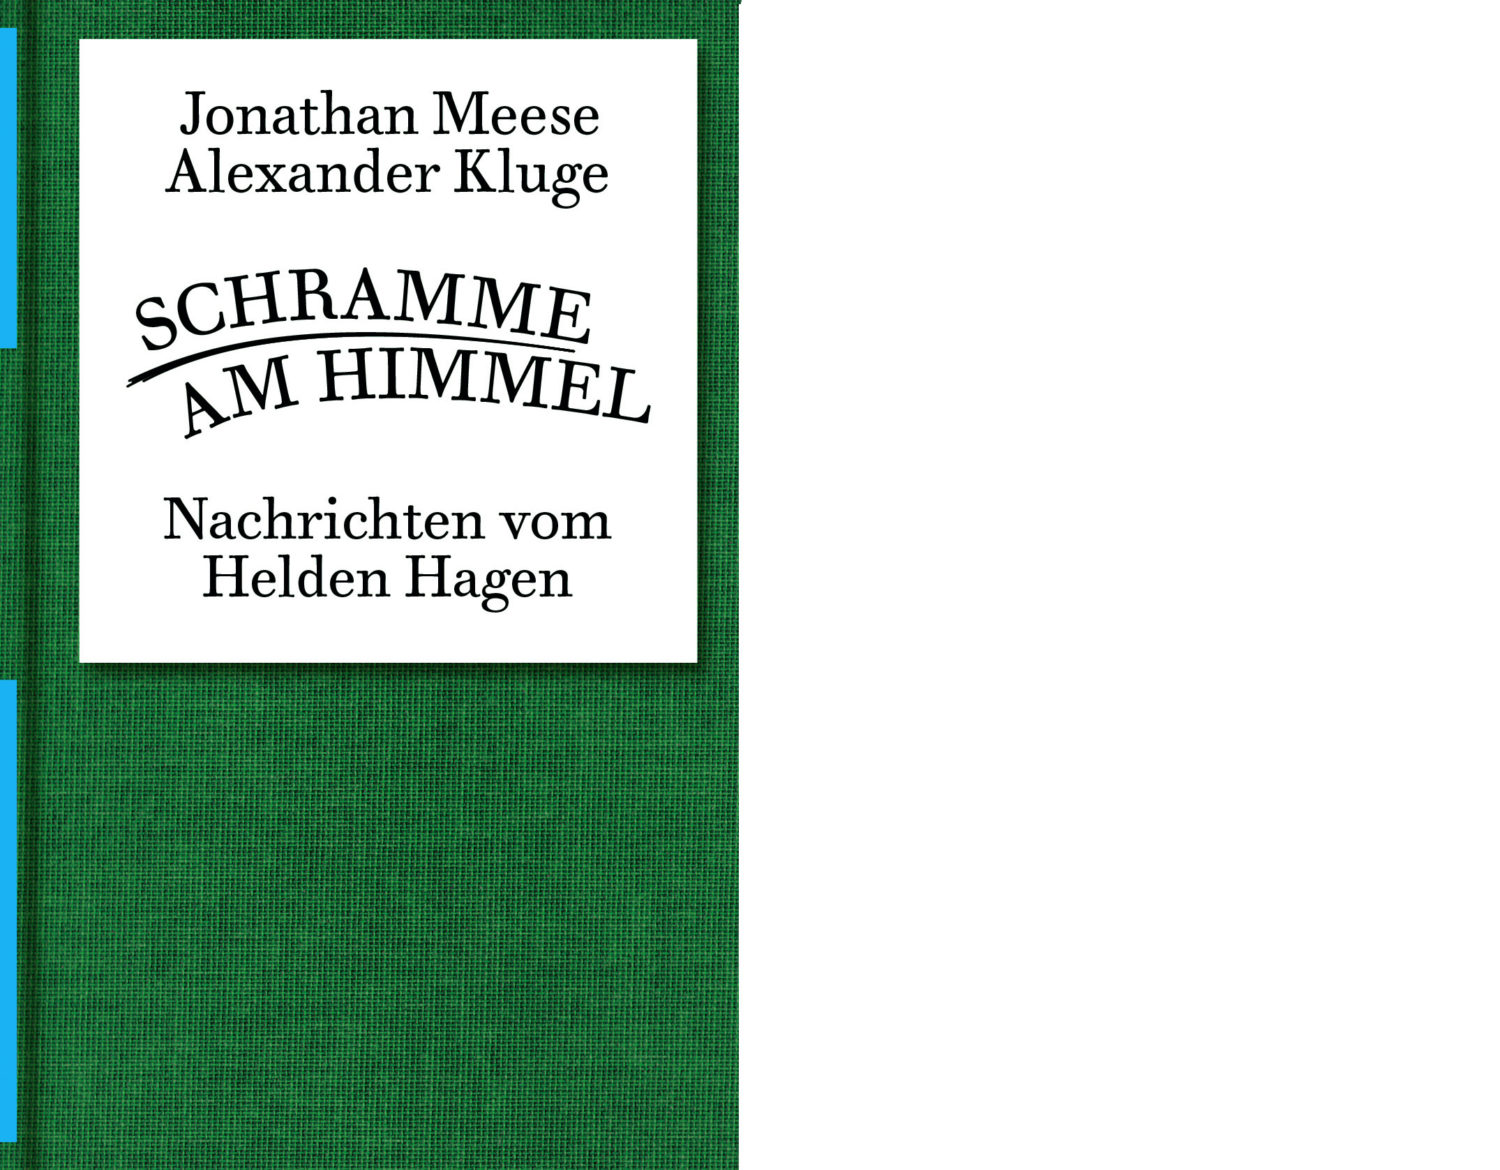 Das Bild zeigt das Cover des Buches "Schramme am Himmel. Nachrichten vom Helden Hagen" von Alexander Kluge und Jonathan Meese.